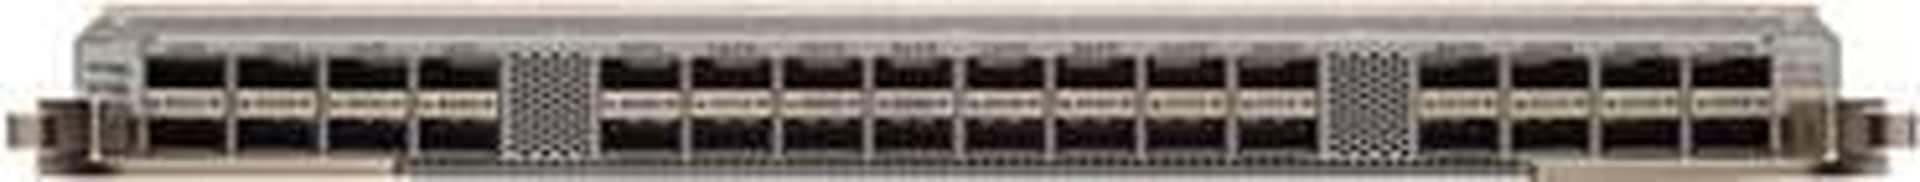 Cisco Nexus 9500 32-Port 100 Gigabit Ethernet QSFP28 Cloud-scale Line Card